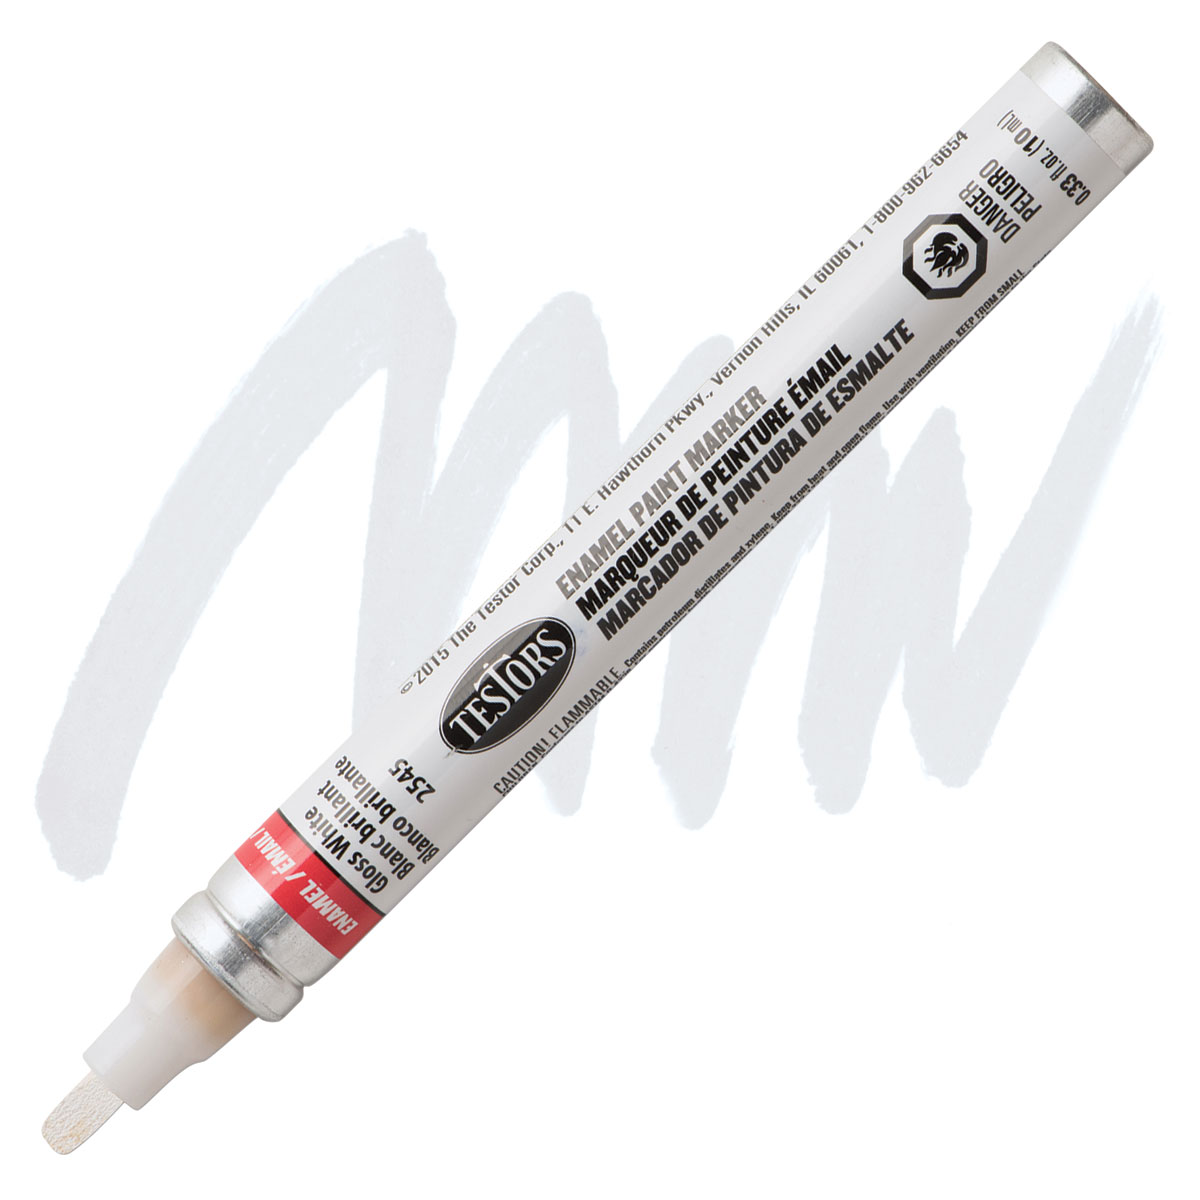 Testors 222643 Enamel Paint Pen, Chisel Lead/Tip: Paint Pens & Markers  (020066135621-1)